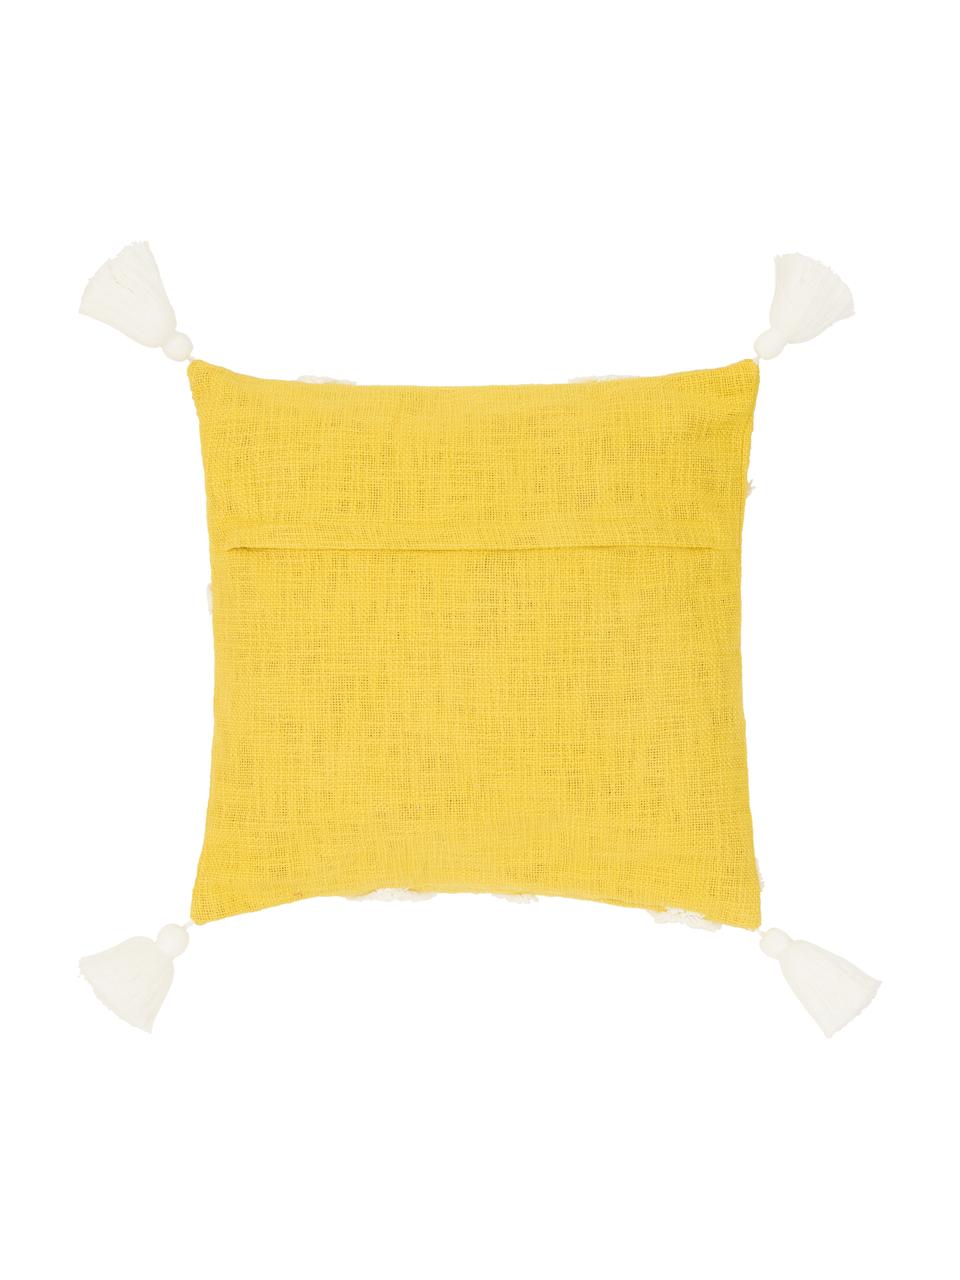 Kissenhülle Tikki mit getufteter Verzierung, 100% Baumwolle, Gelb, Weiss, B 40 x L 40 cm